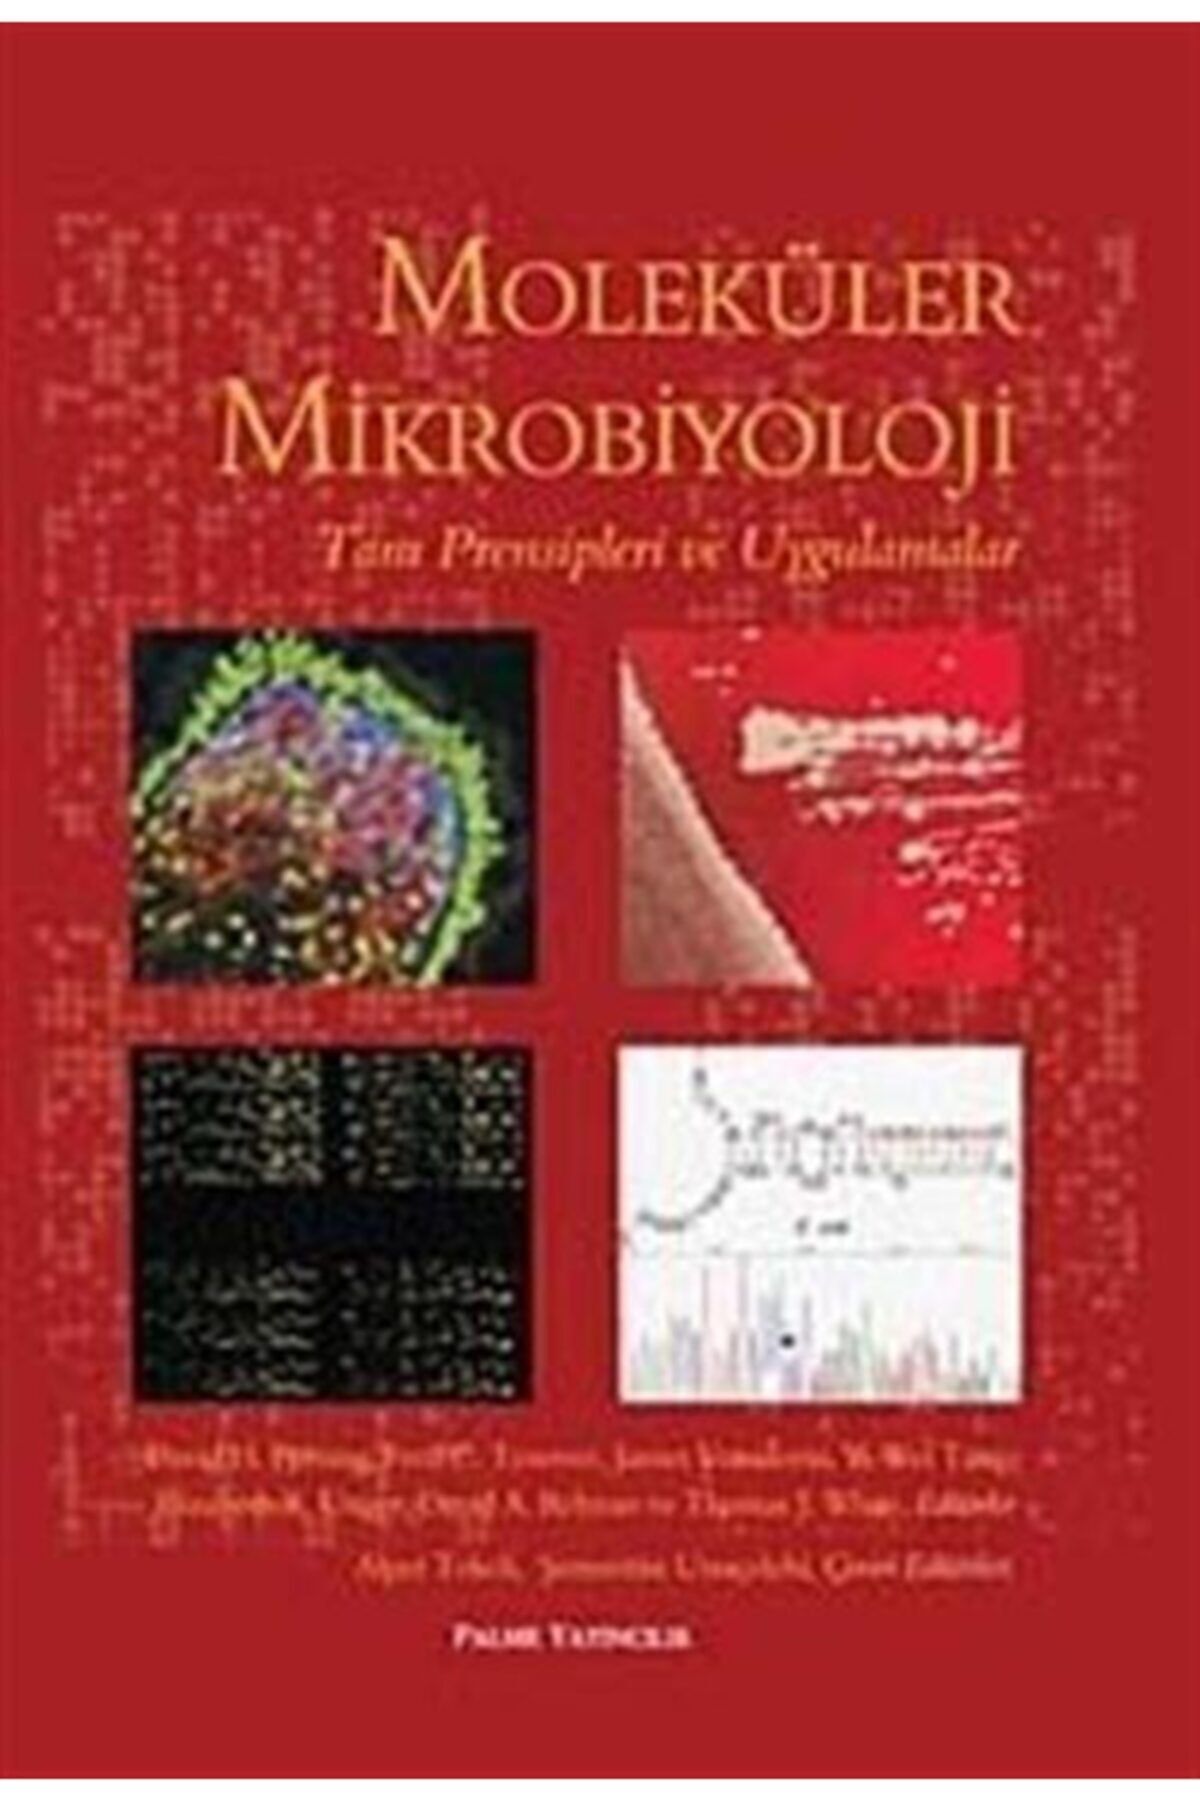 Palme Yayınevi Moleküler Mikrobiyoloji & Tam Prensipleri Ve Uygulamalar